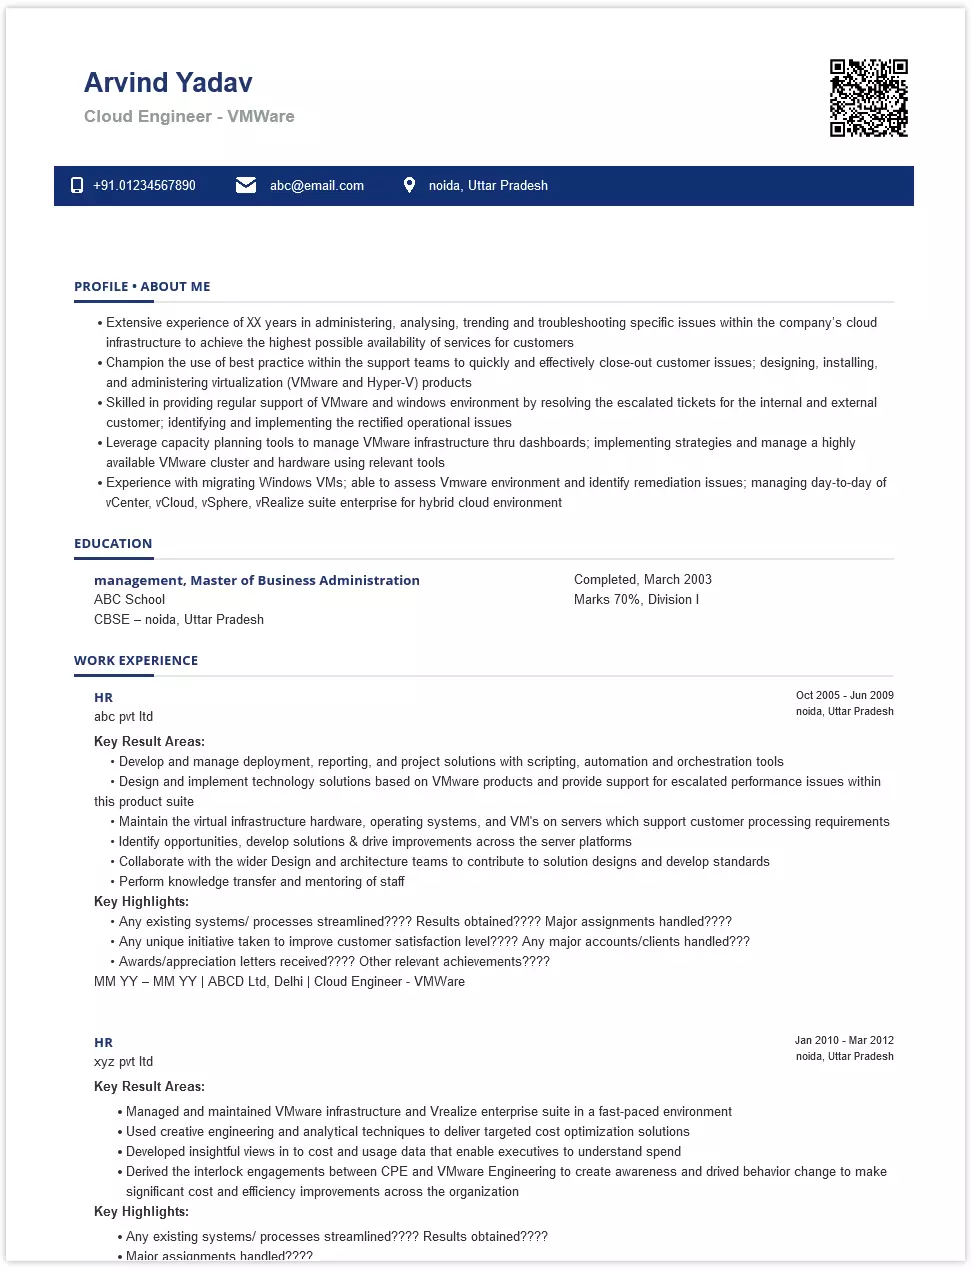 cloud engineer - vmware resume samples